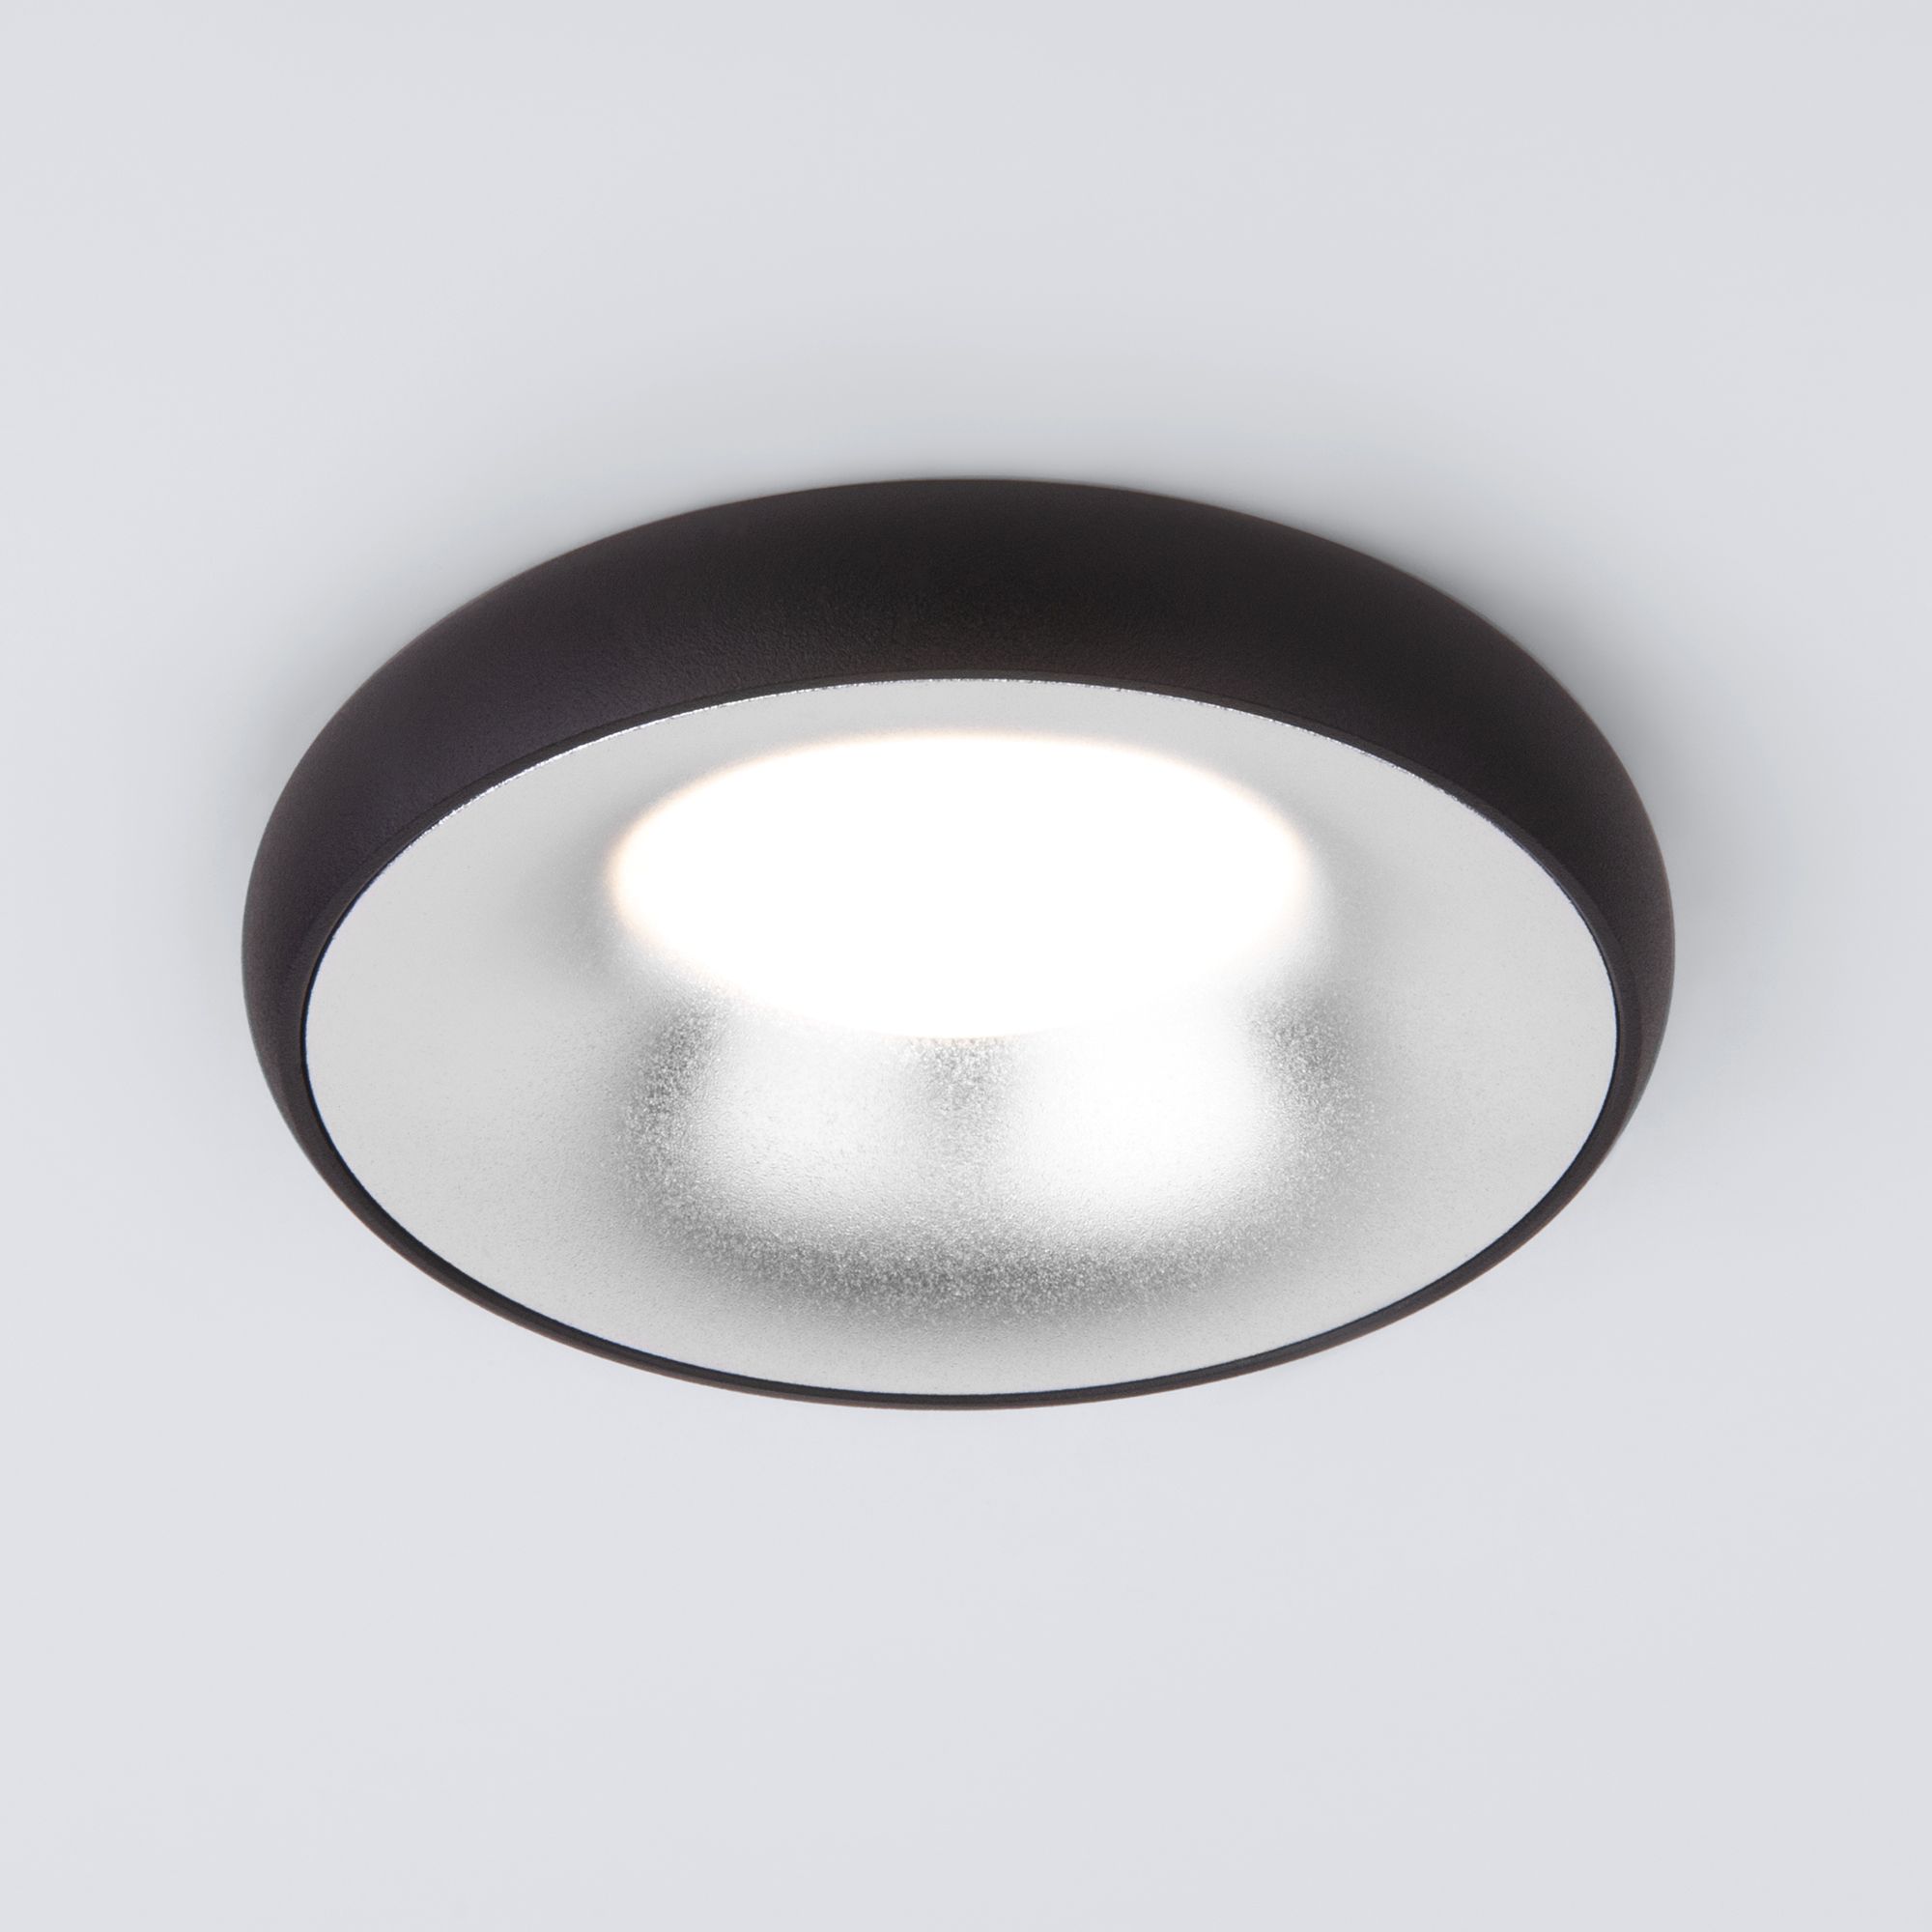 Встраиваемый точечный светильник 118 MR16 серебро/черный 118 MR16 серебро/черный